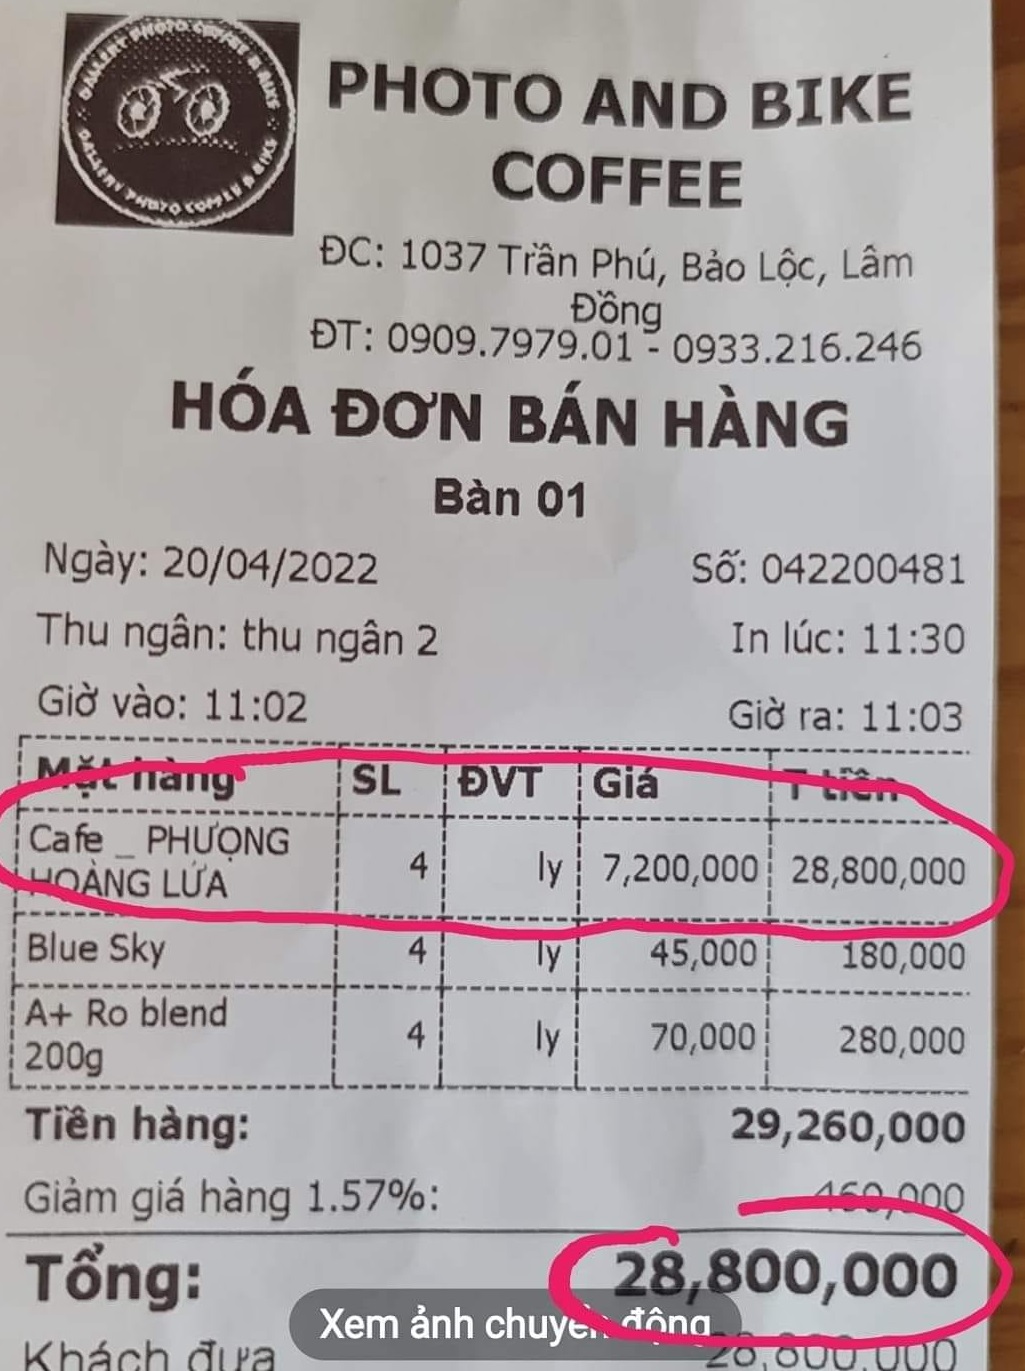 Lâm Đồng: Chủ quán bán cà phê Phượng hoàng lửa 7,2 triệu đồng bị phạt gần 19 triệu đồng - Ảnh 2.